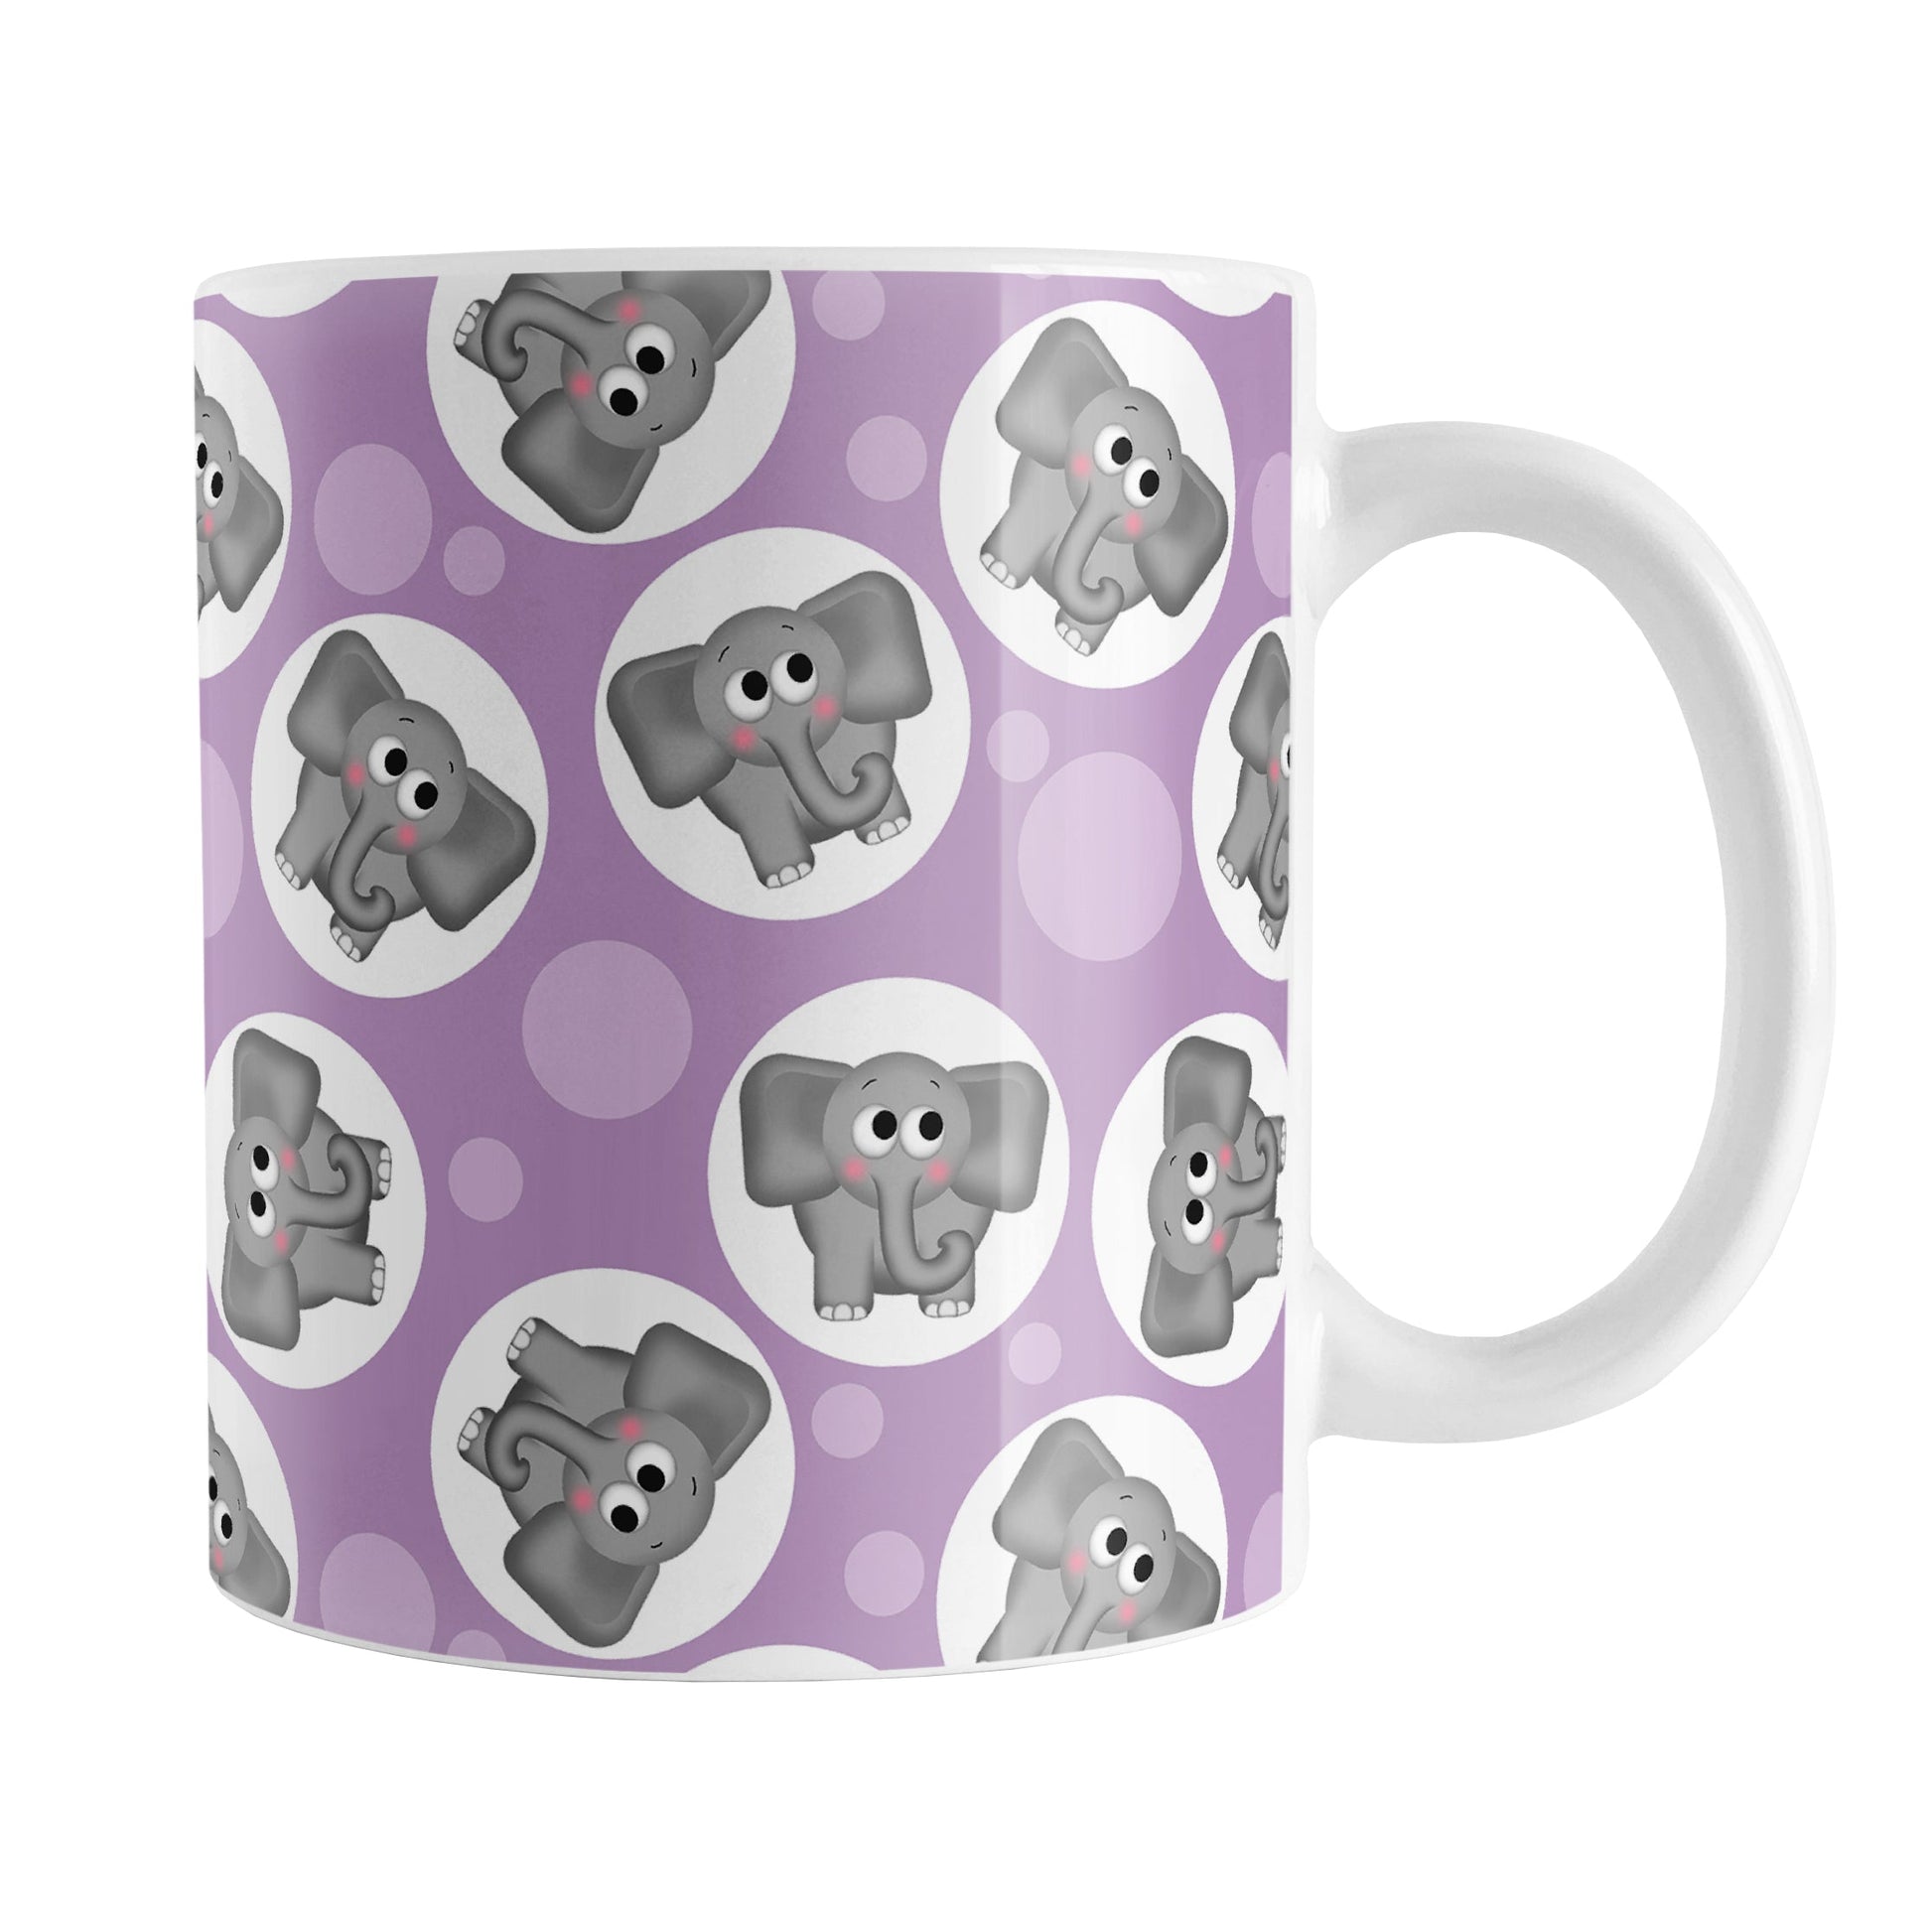 Cute Purple Elephant Pattern Mug (11oz) at Amy's Coffee Mugs